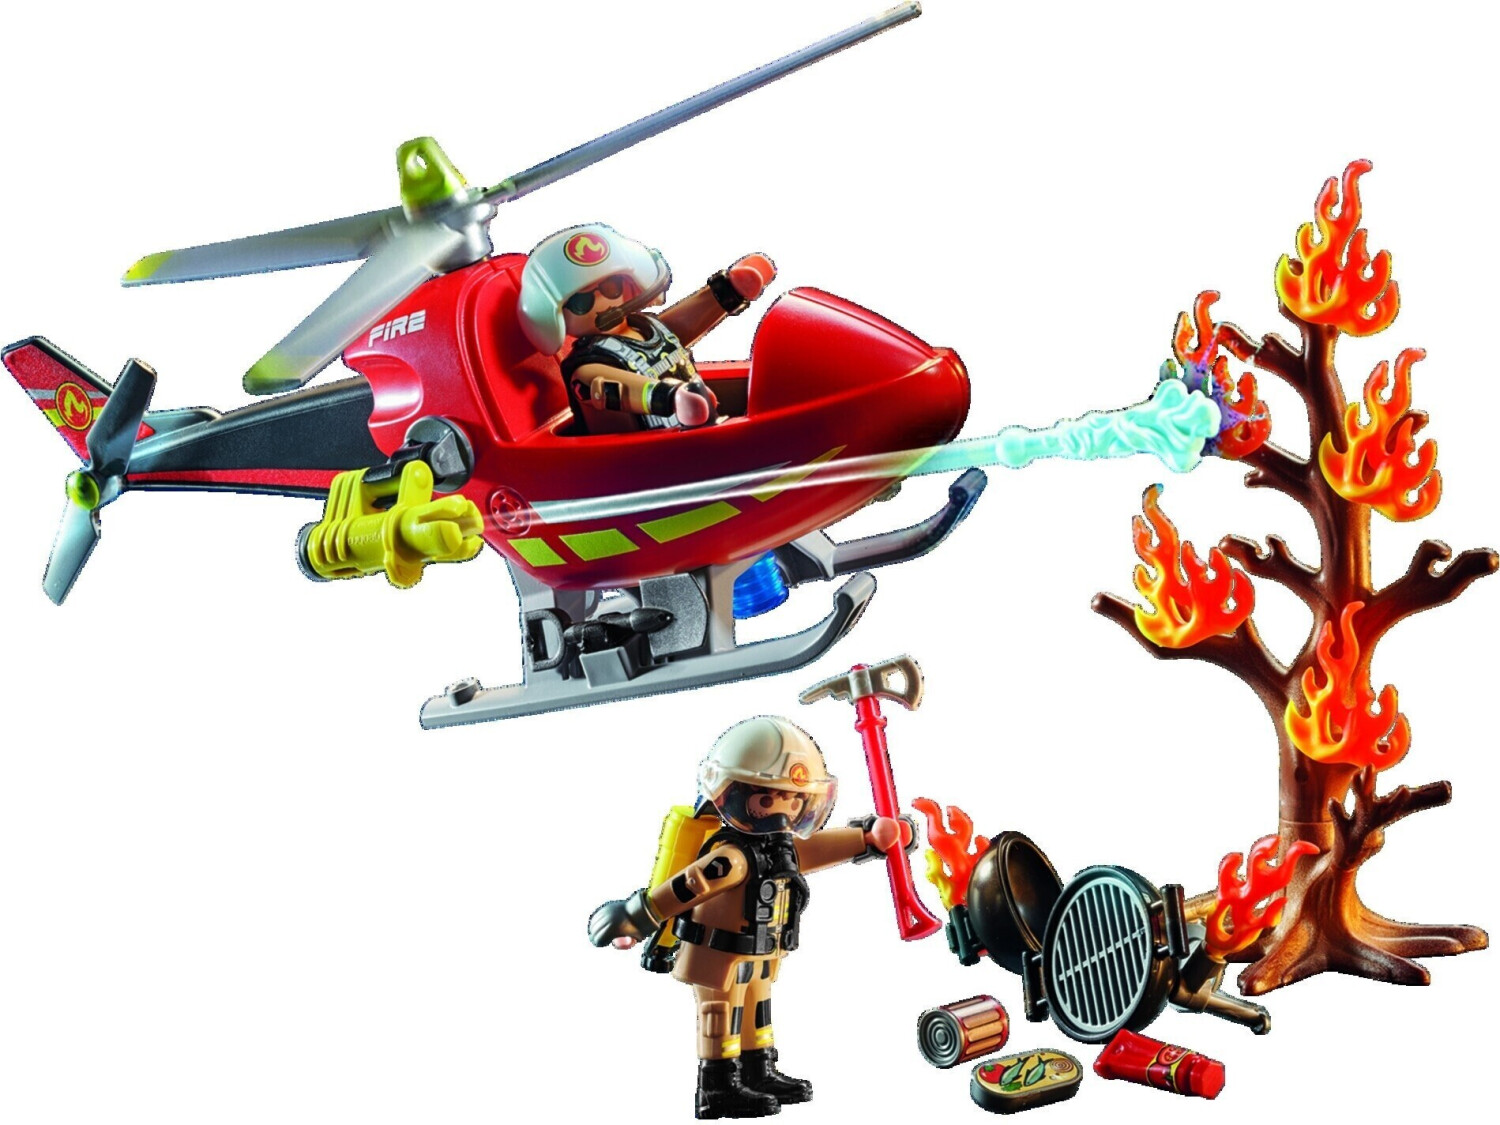 Playmobil - les métiers - les pompiers - Playmobil